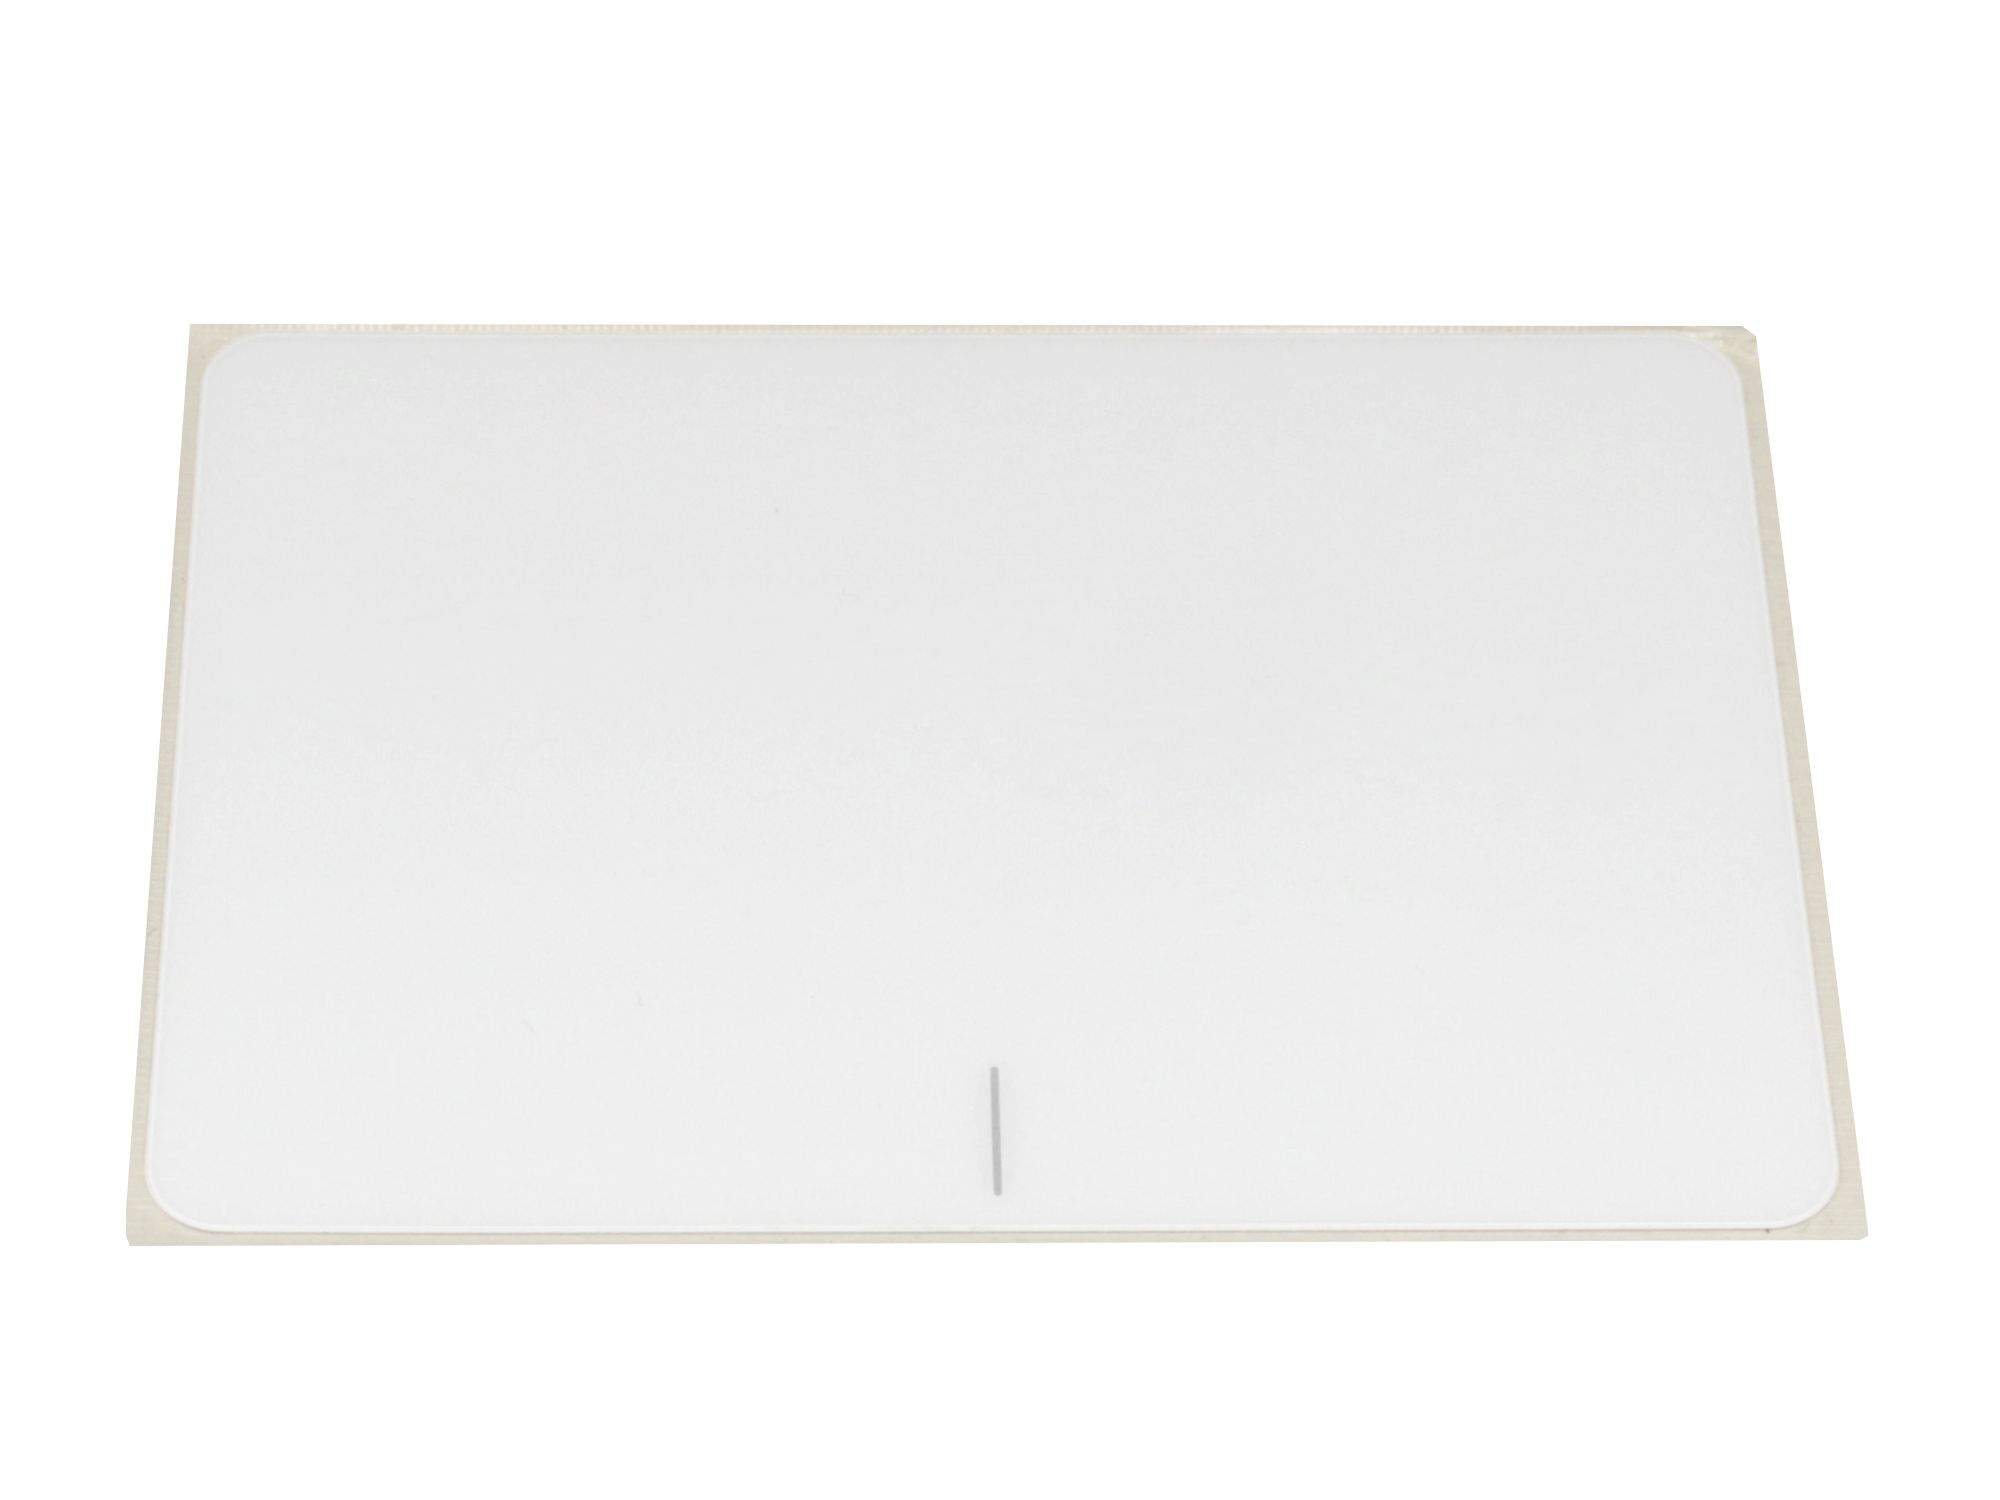 ASUS Touchpad Abdeckung weiß Original für Asus VivoBook X556UR Serie